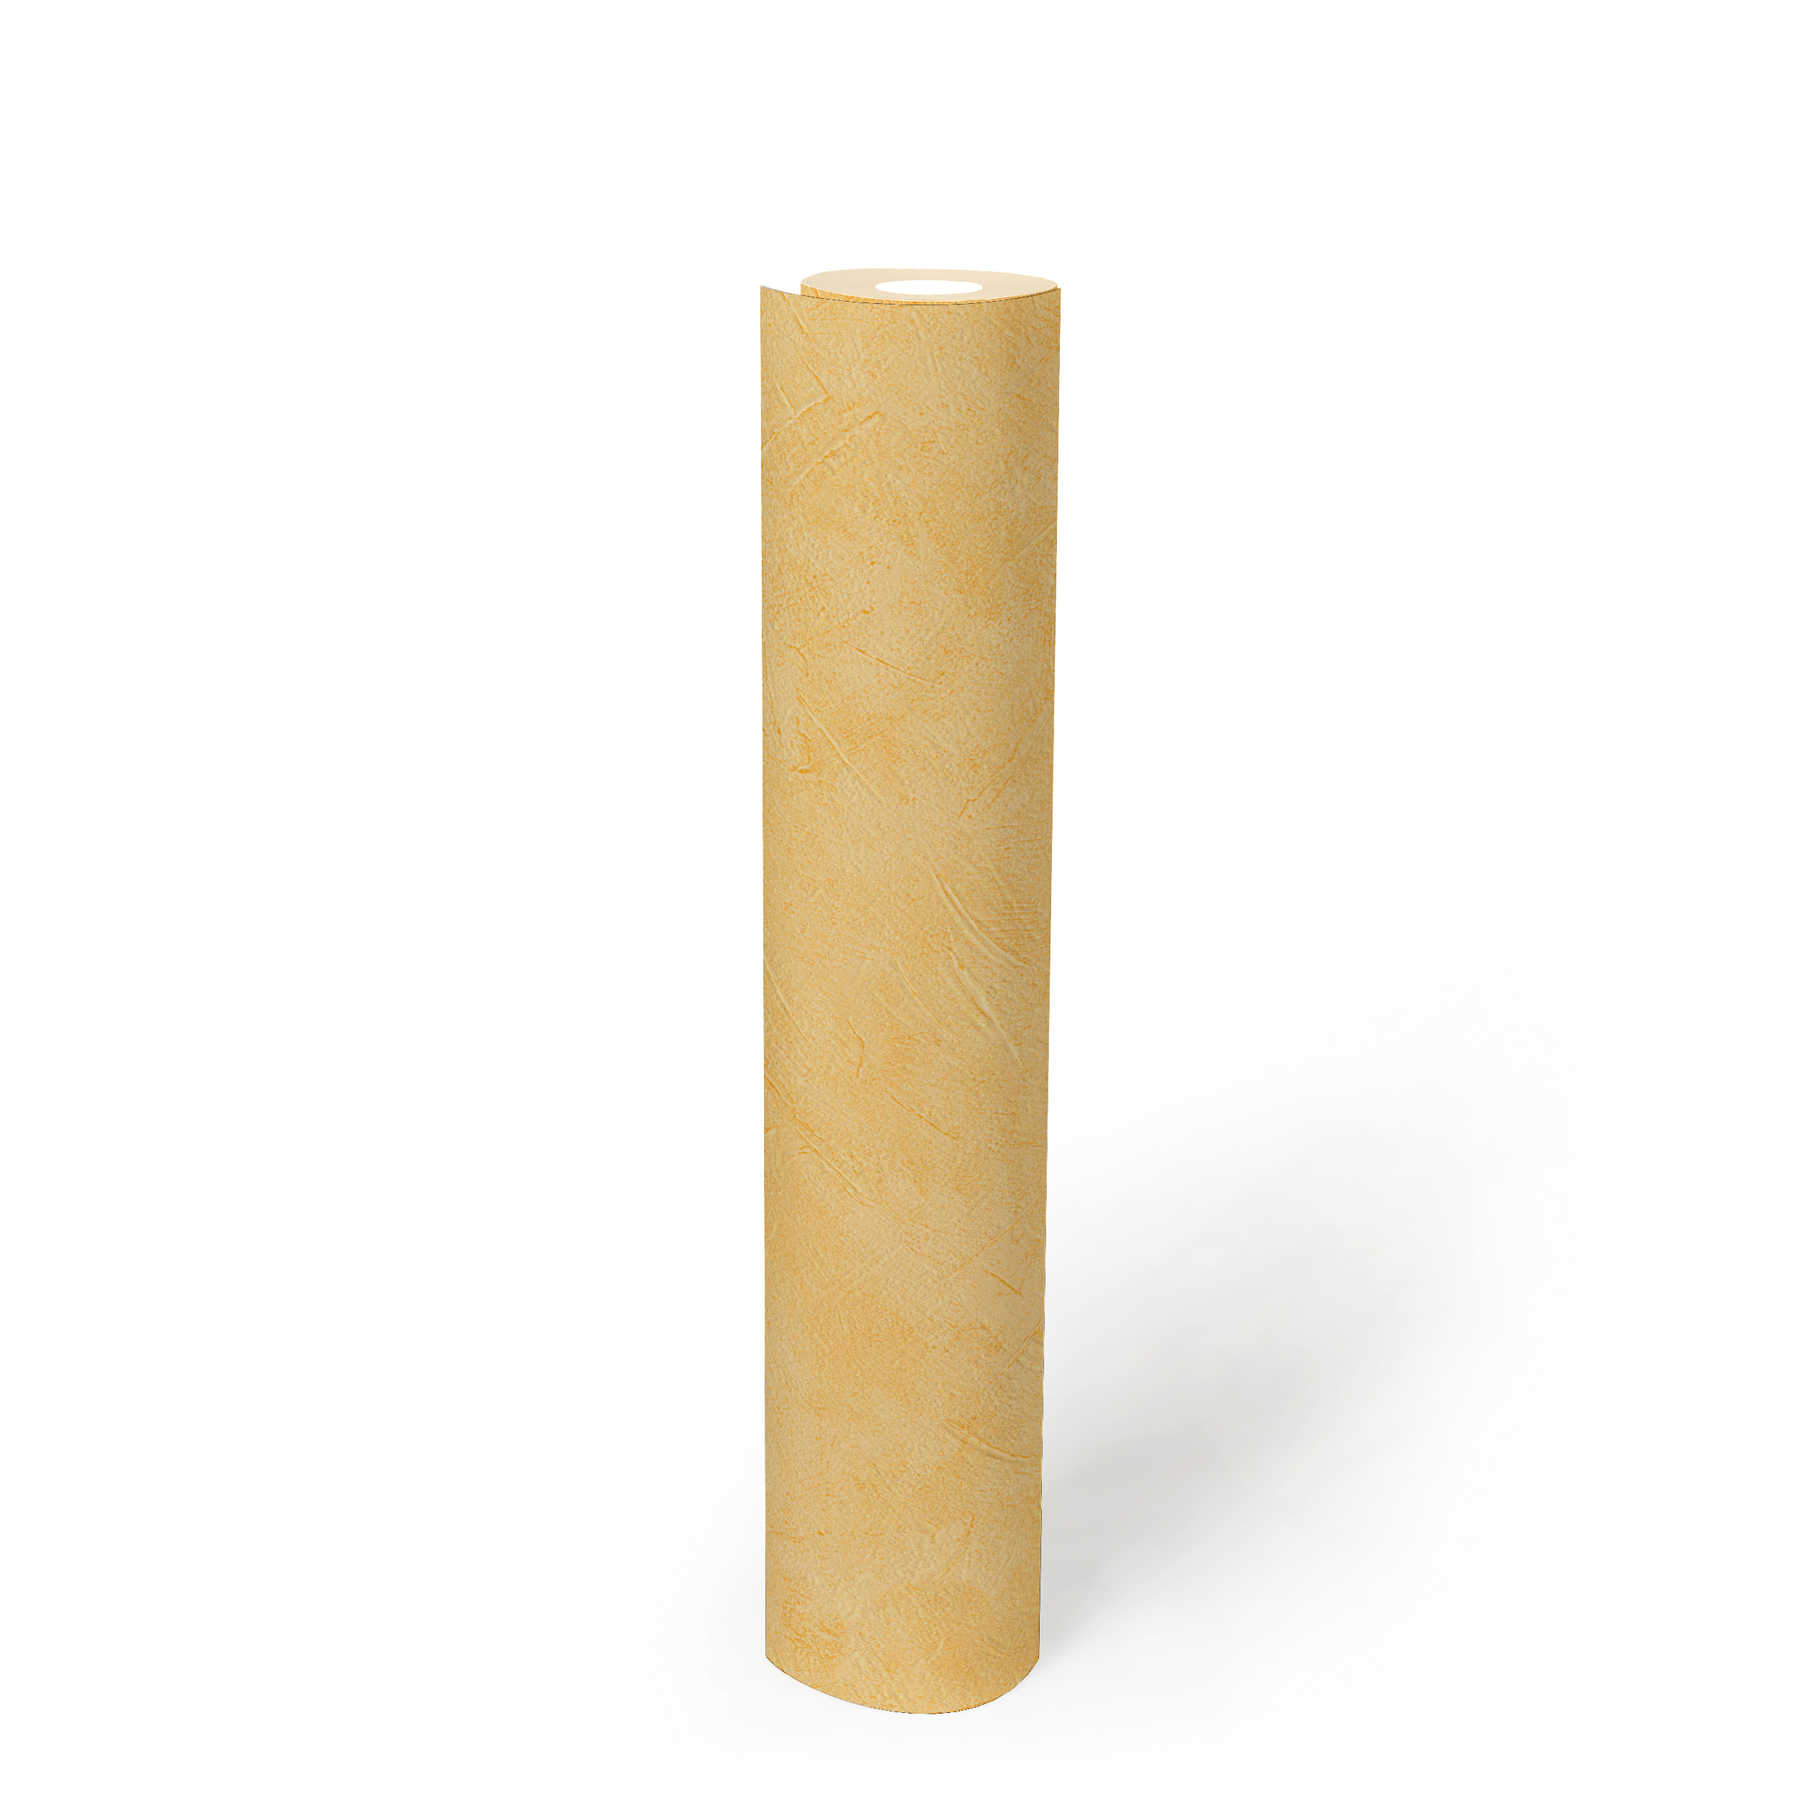             Gipsbehang veeggips geel uni met structuurpatroon
        